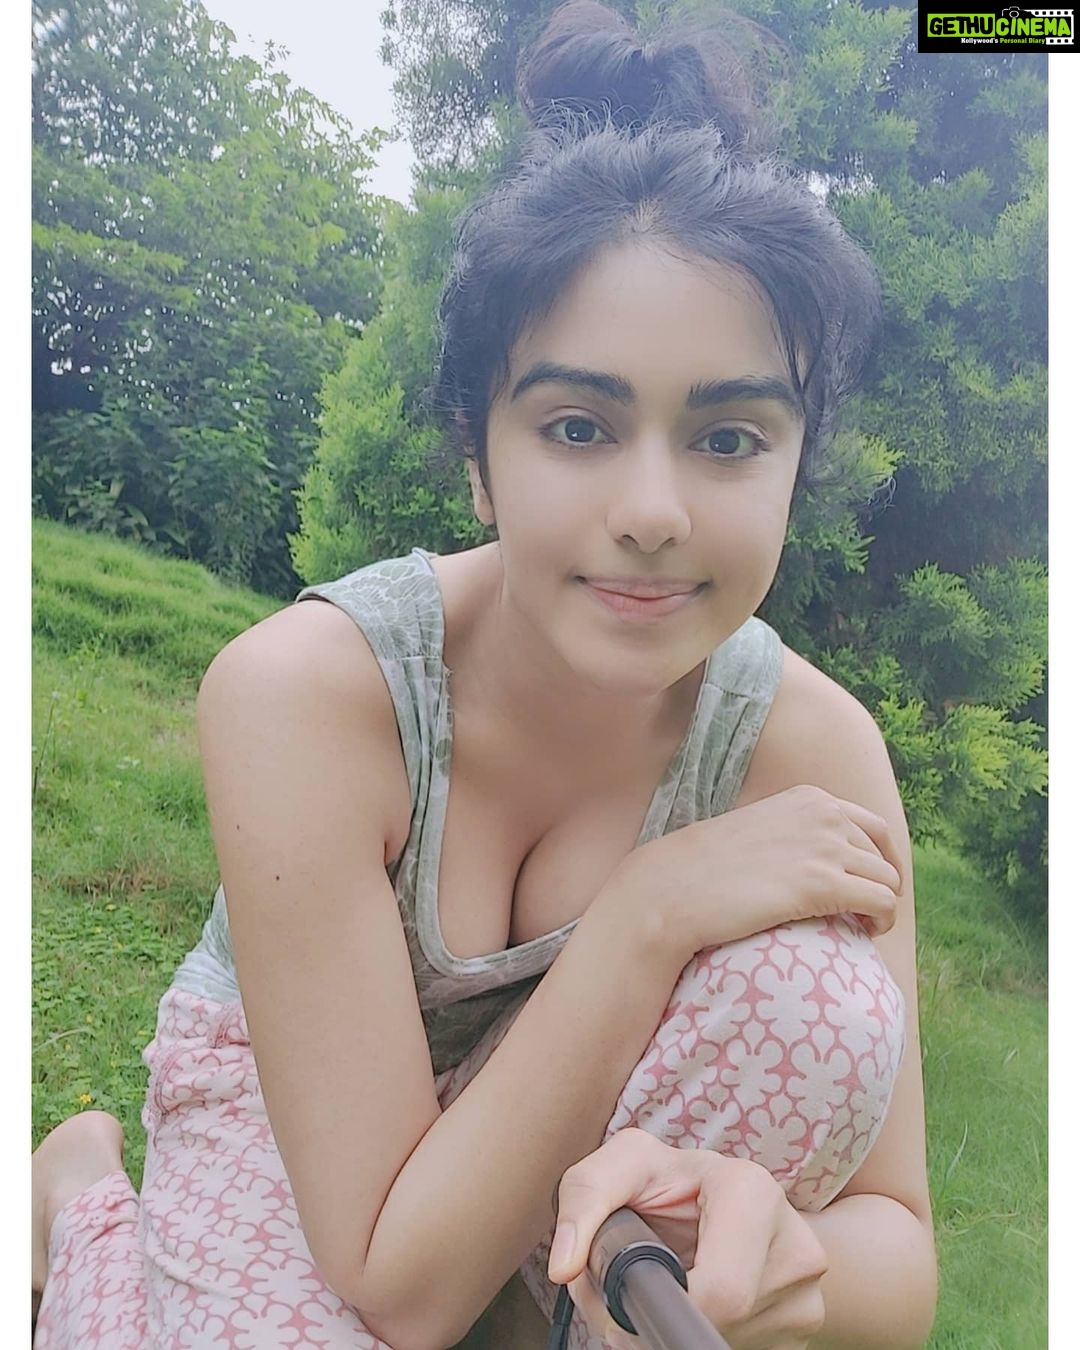 1080px x 1350px - Actress Adah Sharma Top 100 Instagram Photos and Posts - Gethu Cinema